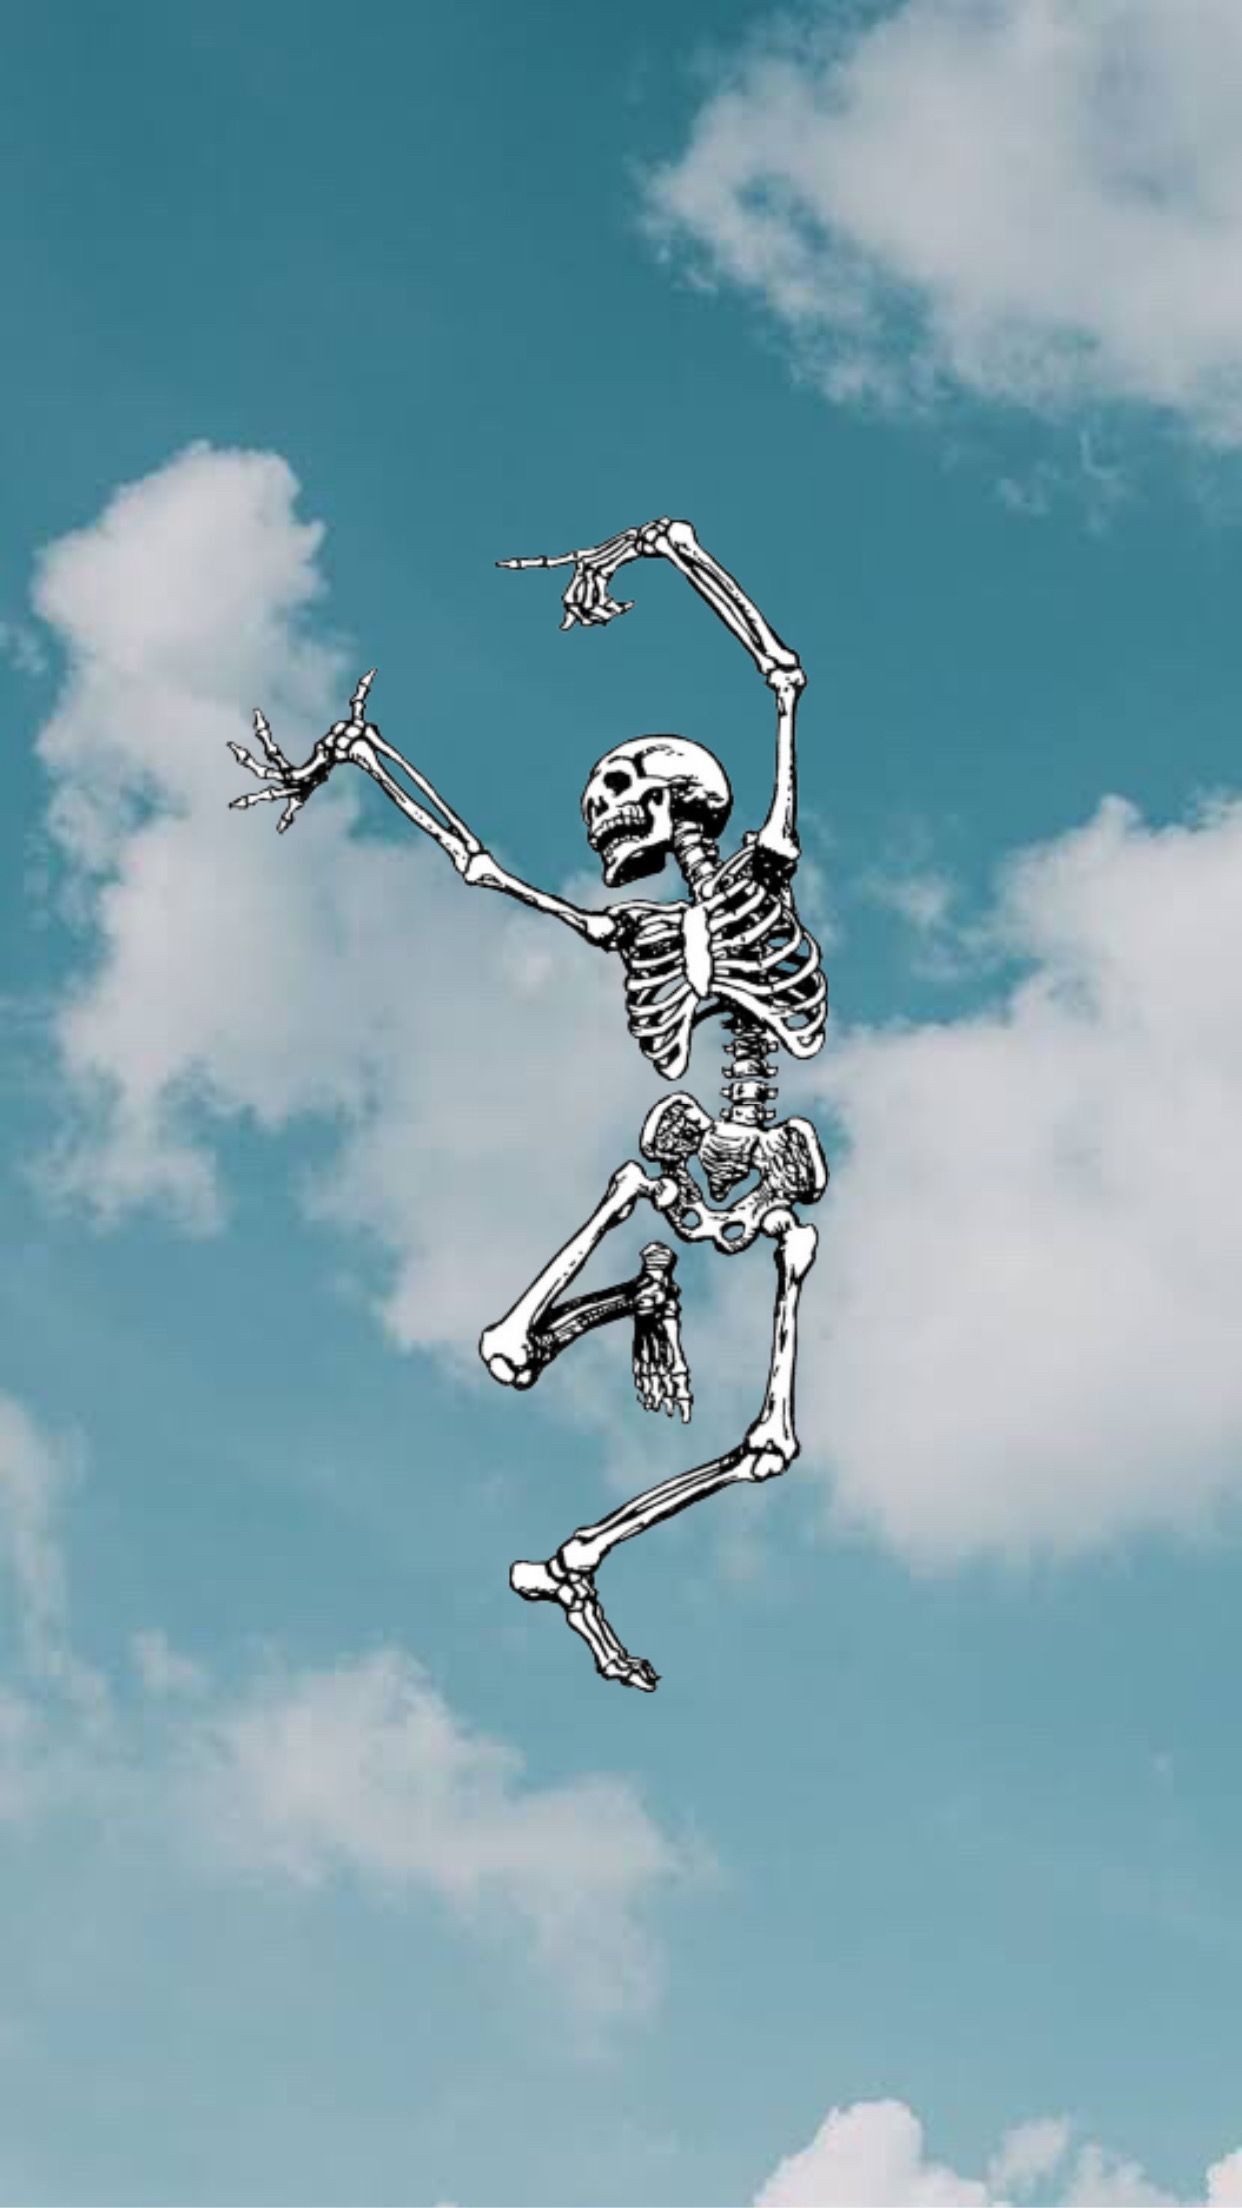 A skeleton is dancing in the sky - Skeleton, dance